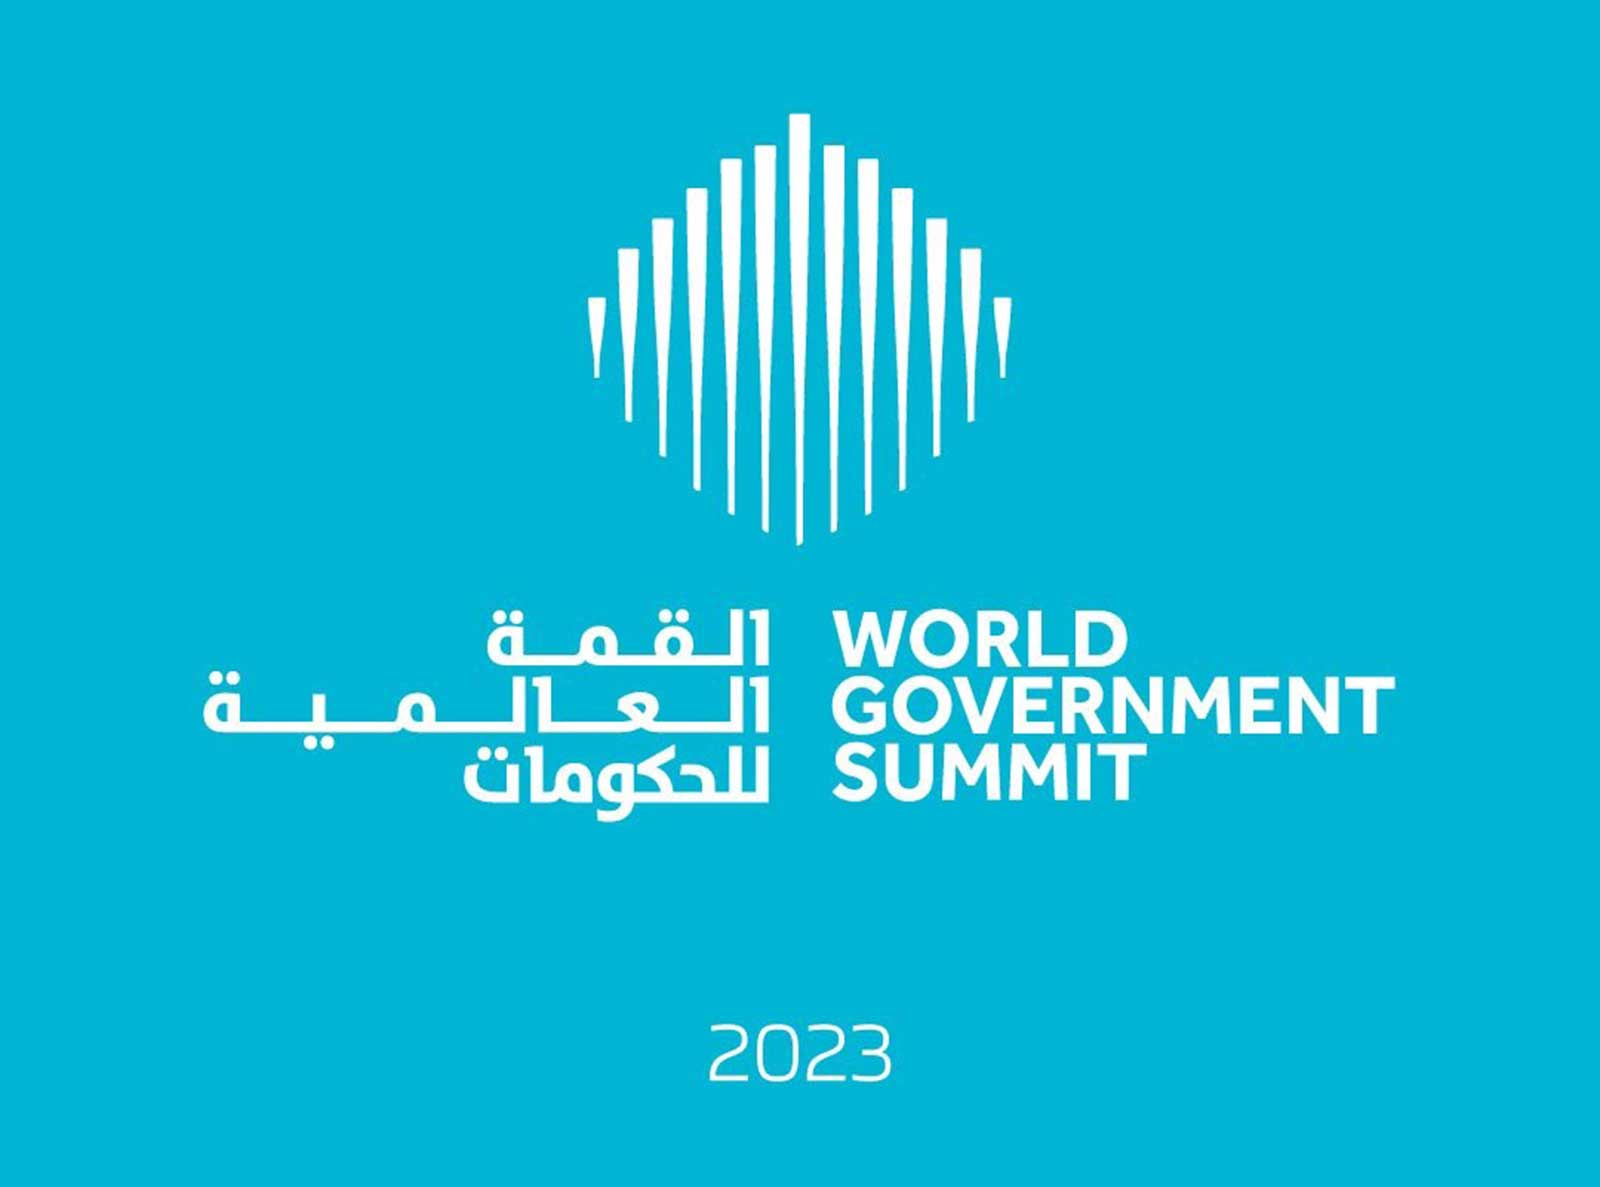 محمد بن راشد: الإمارات ترحب بأكثر من 20 رئيس دولة و150 حكومة في القمة العالمية للحكومات